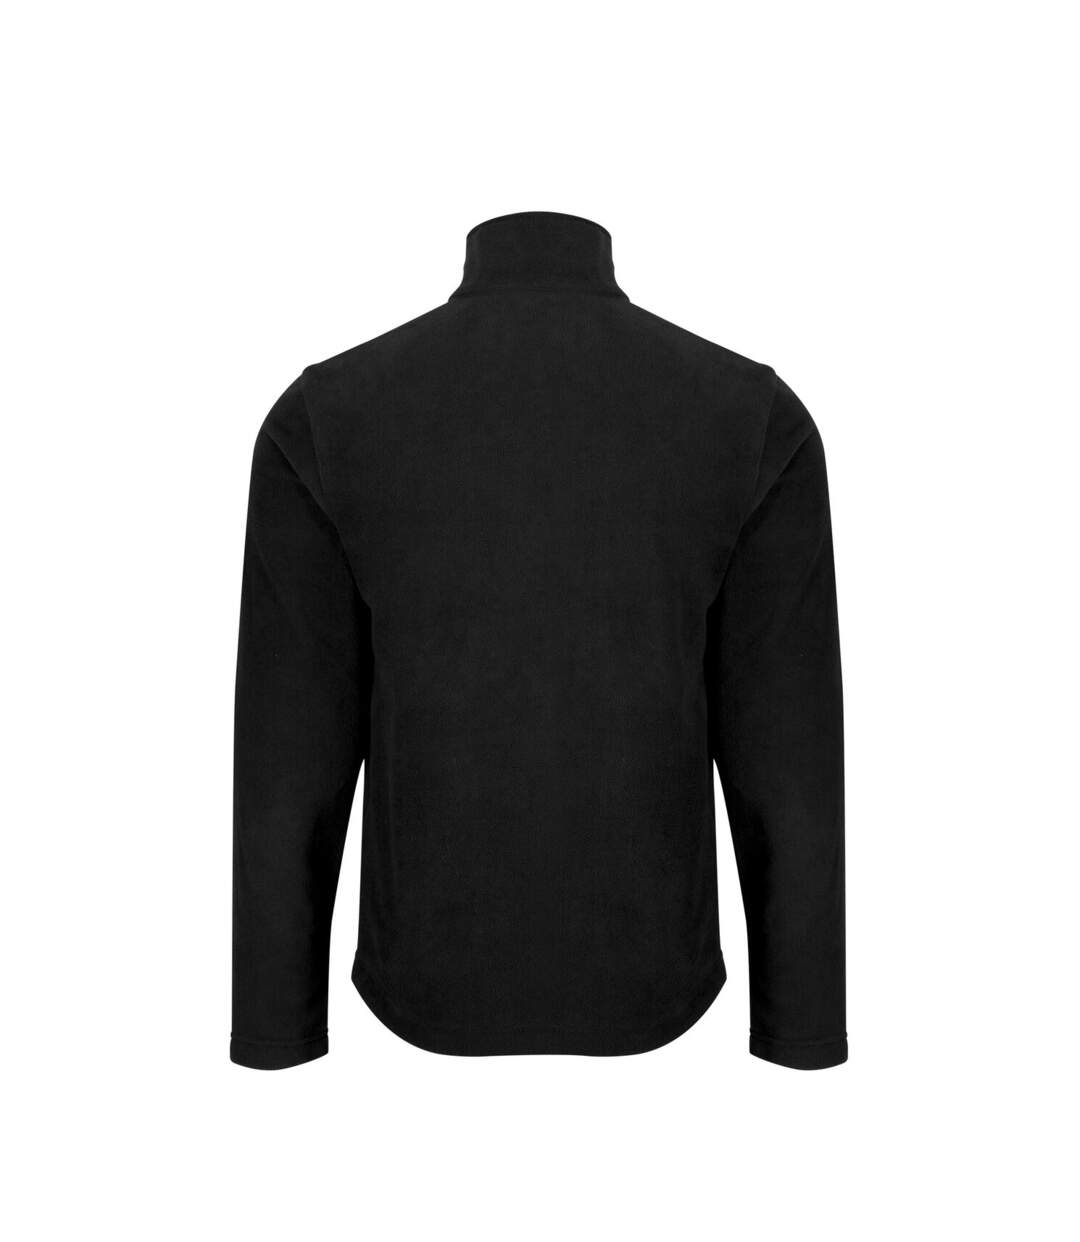 Regatta Mens Honesty Made Recycled Fleece Jacket (Black) - UTRG5132